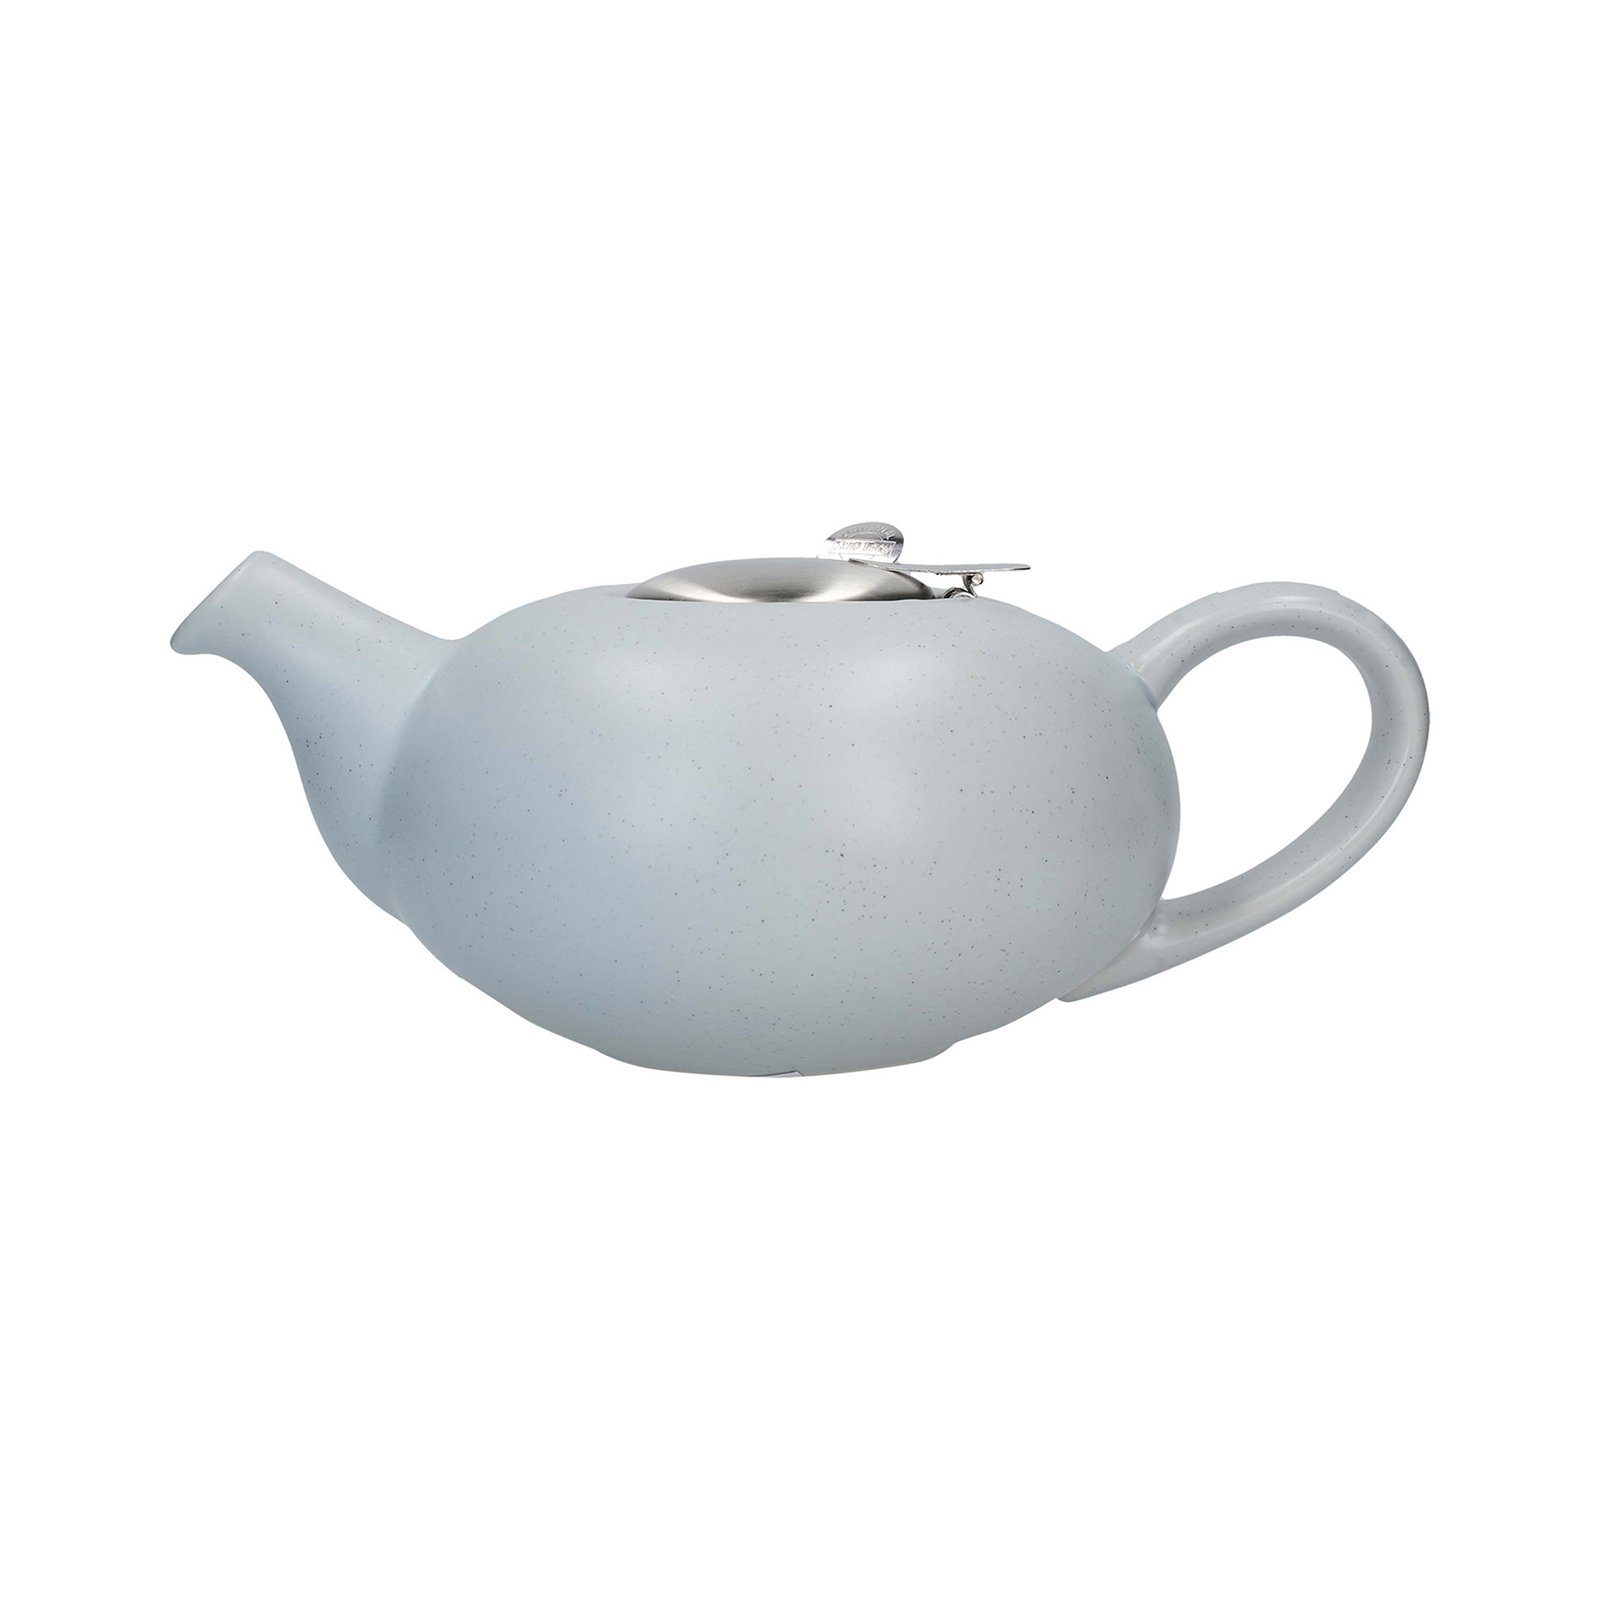 Neuetischkultur Teekanne Teekanne mit Sieb, 4 Tassen 1 L, Keramik, 1 l